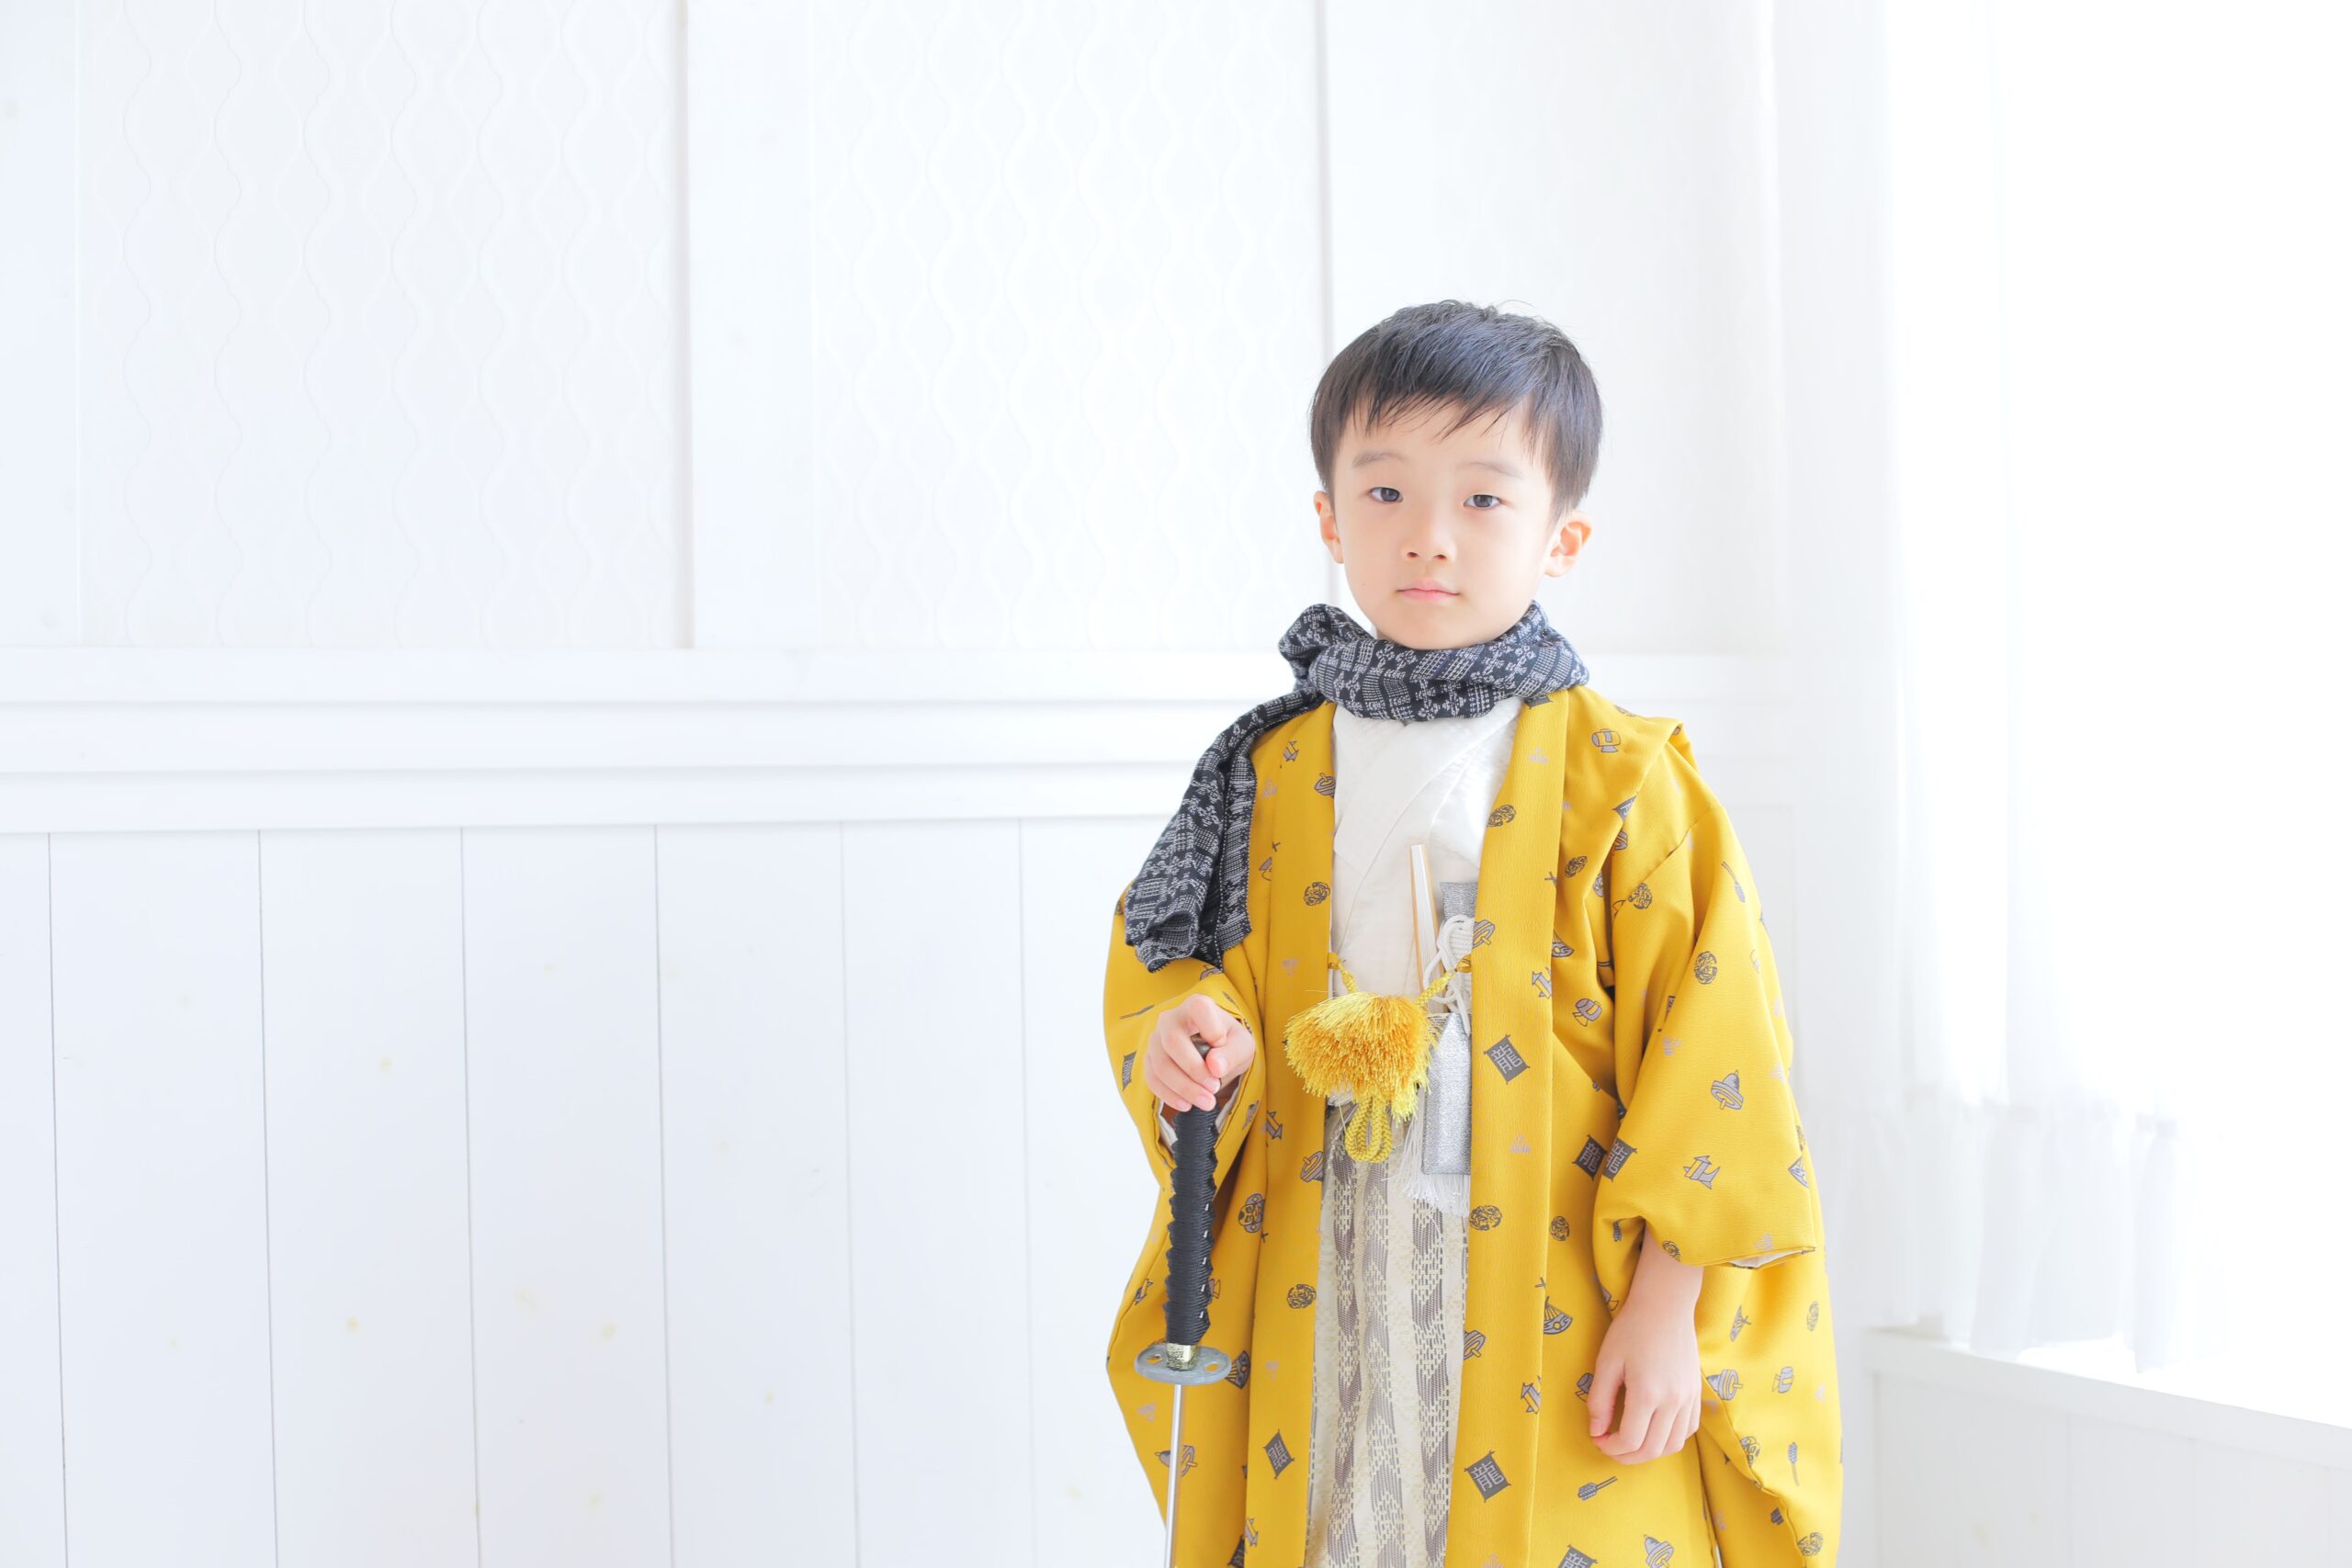 現代風のデザインを取り入れた紋付袴で、お子様の一日を特別に彩ります